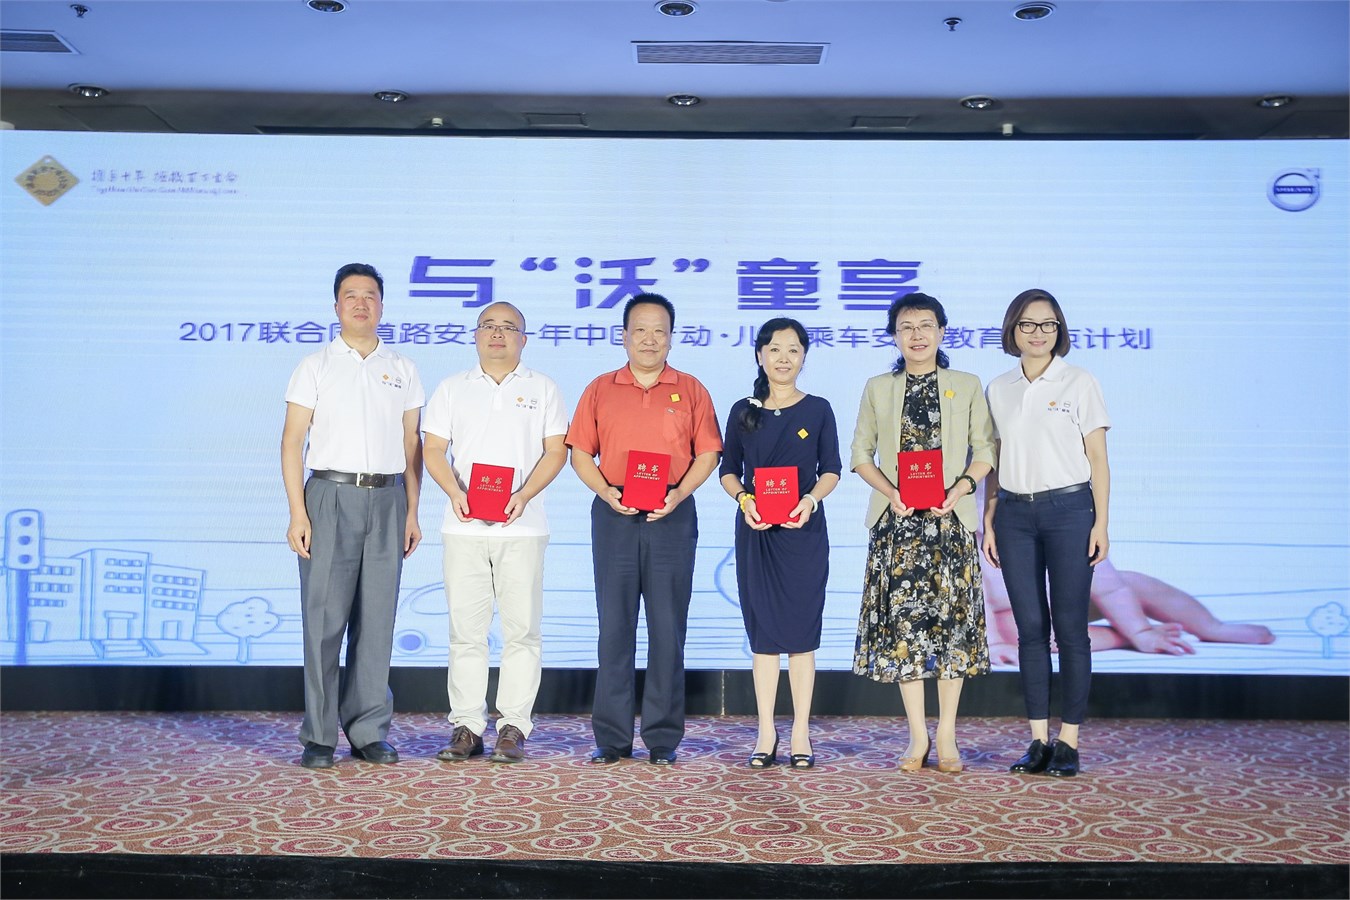 沃尔沃汽车集团亚太区企业传播副总裁赵琴女士与儿童宣教专家们合影